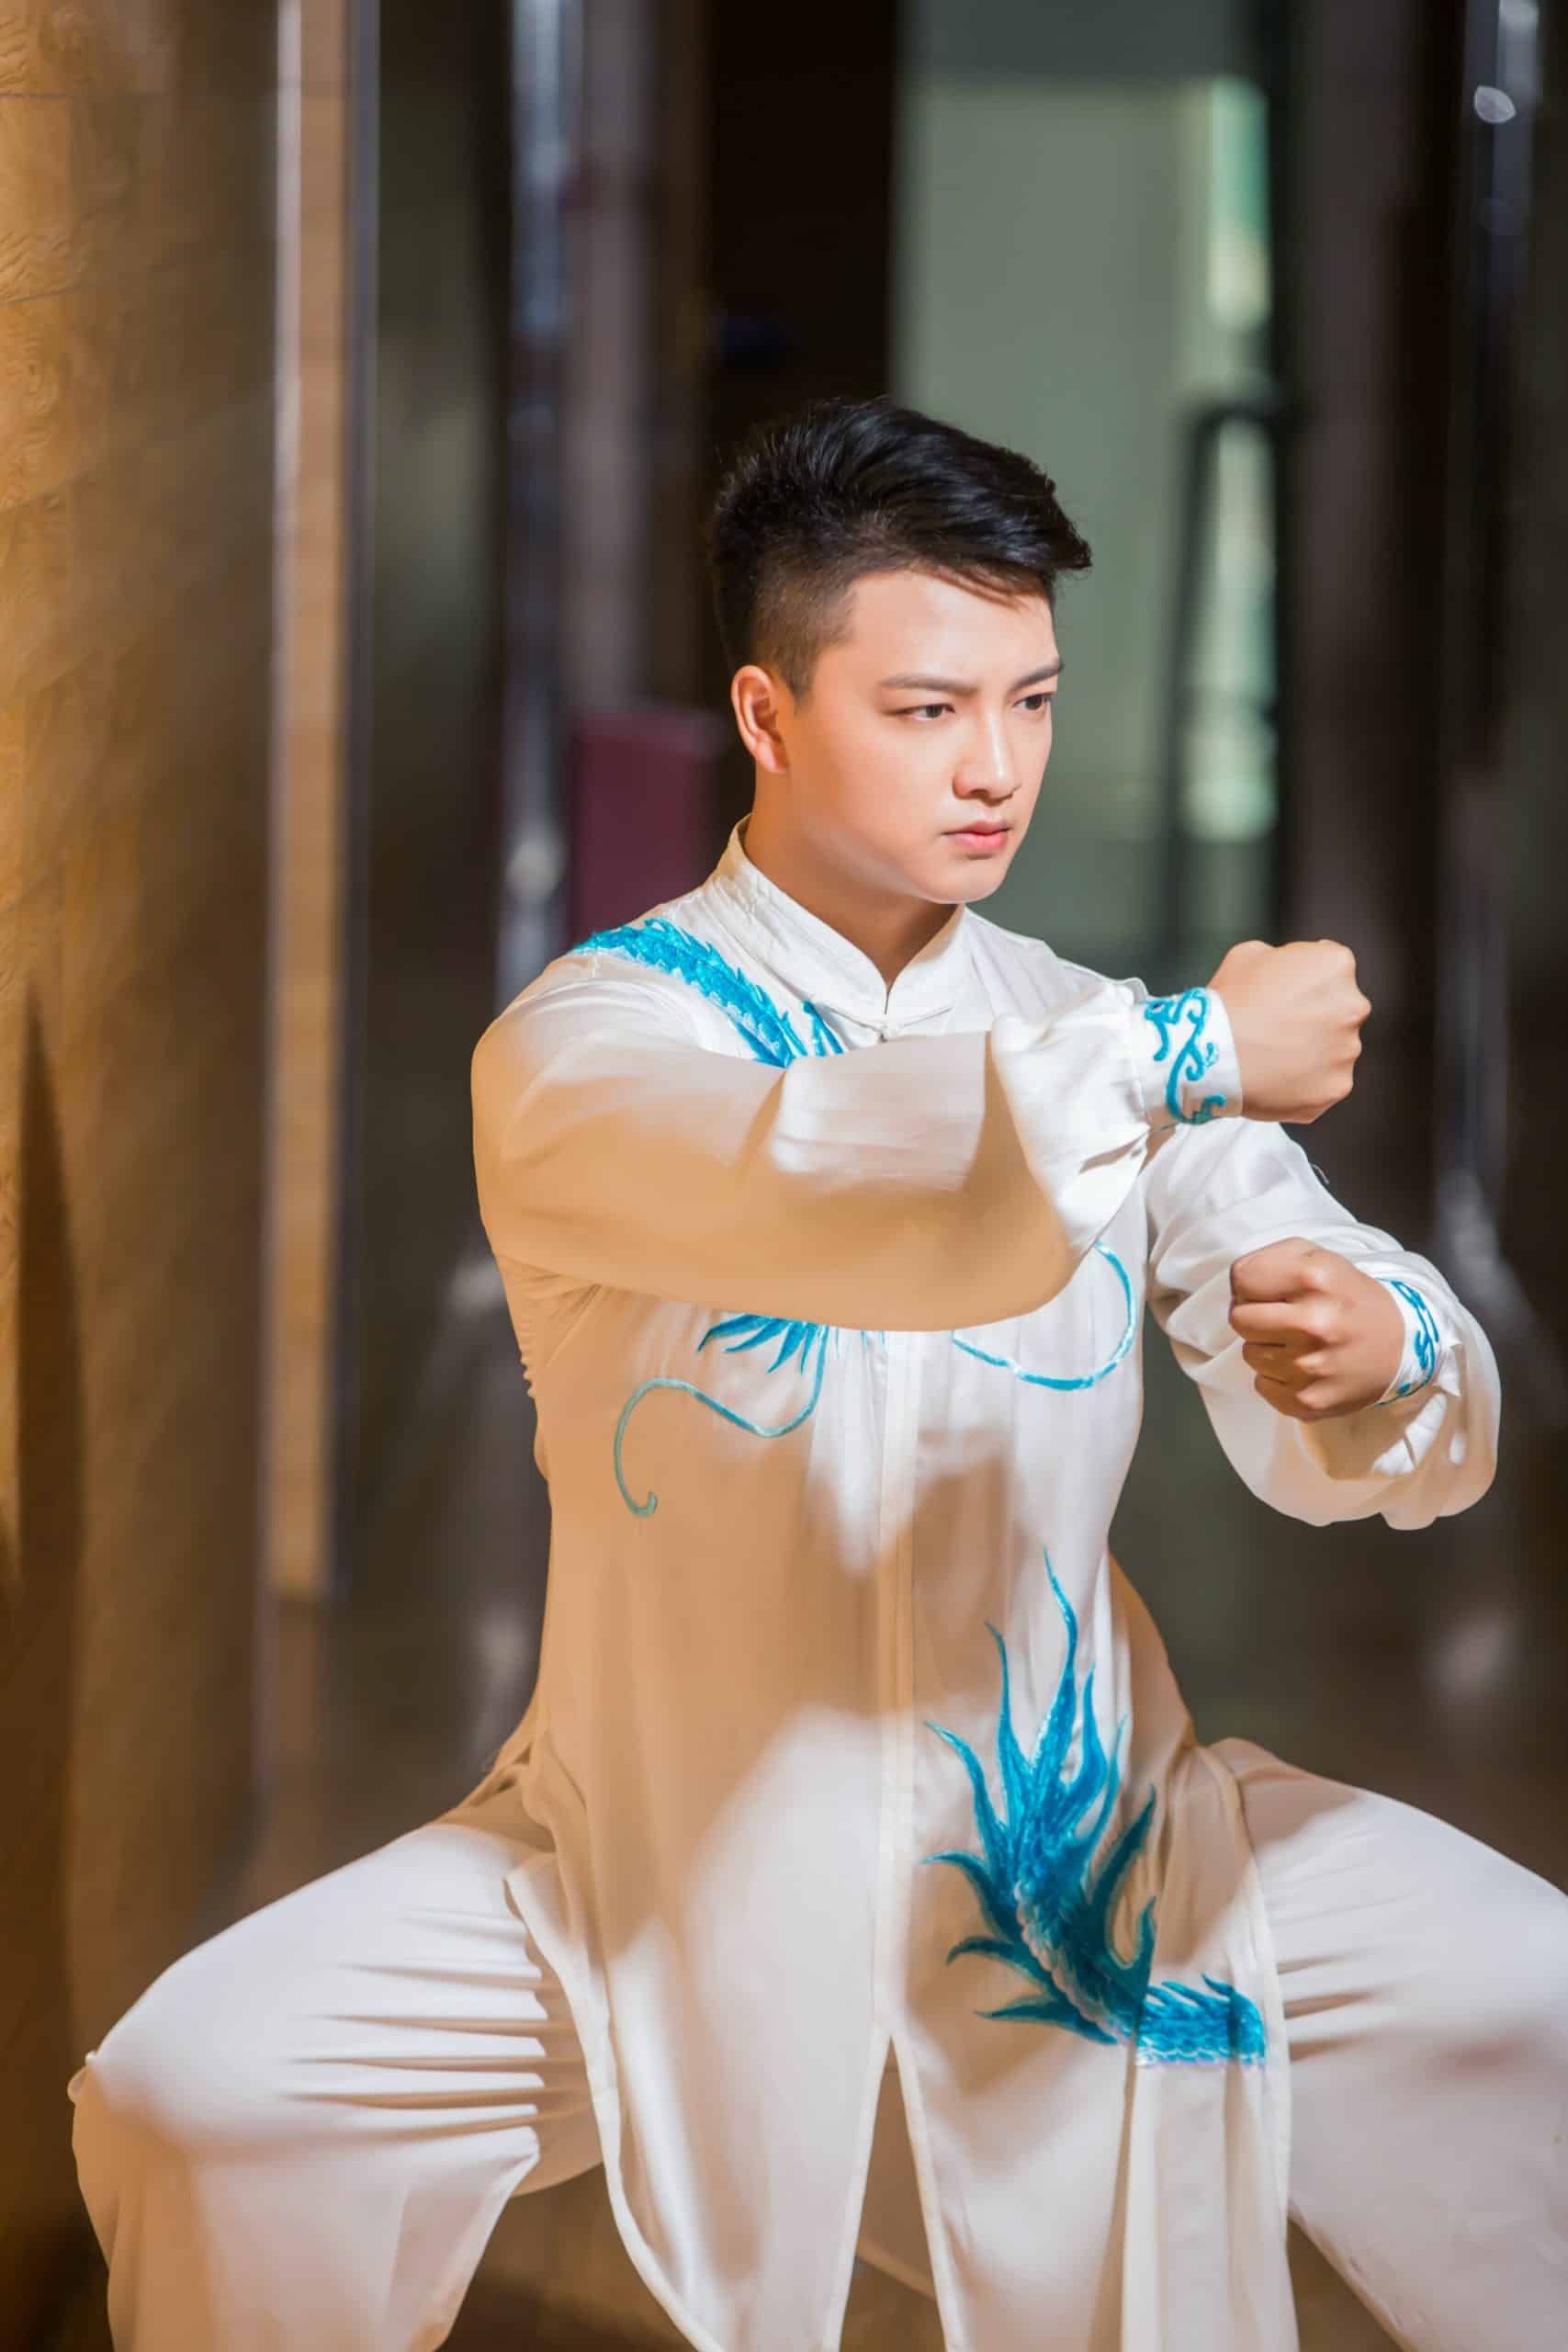 Homme en train de pratiquer le Tai-Chi dans une tenue blanche avec des broderie bleu turquoise